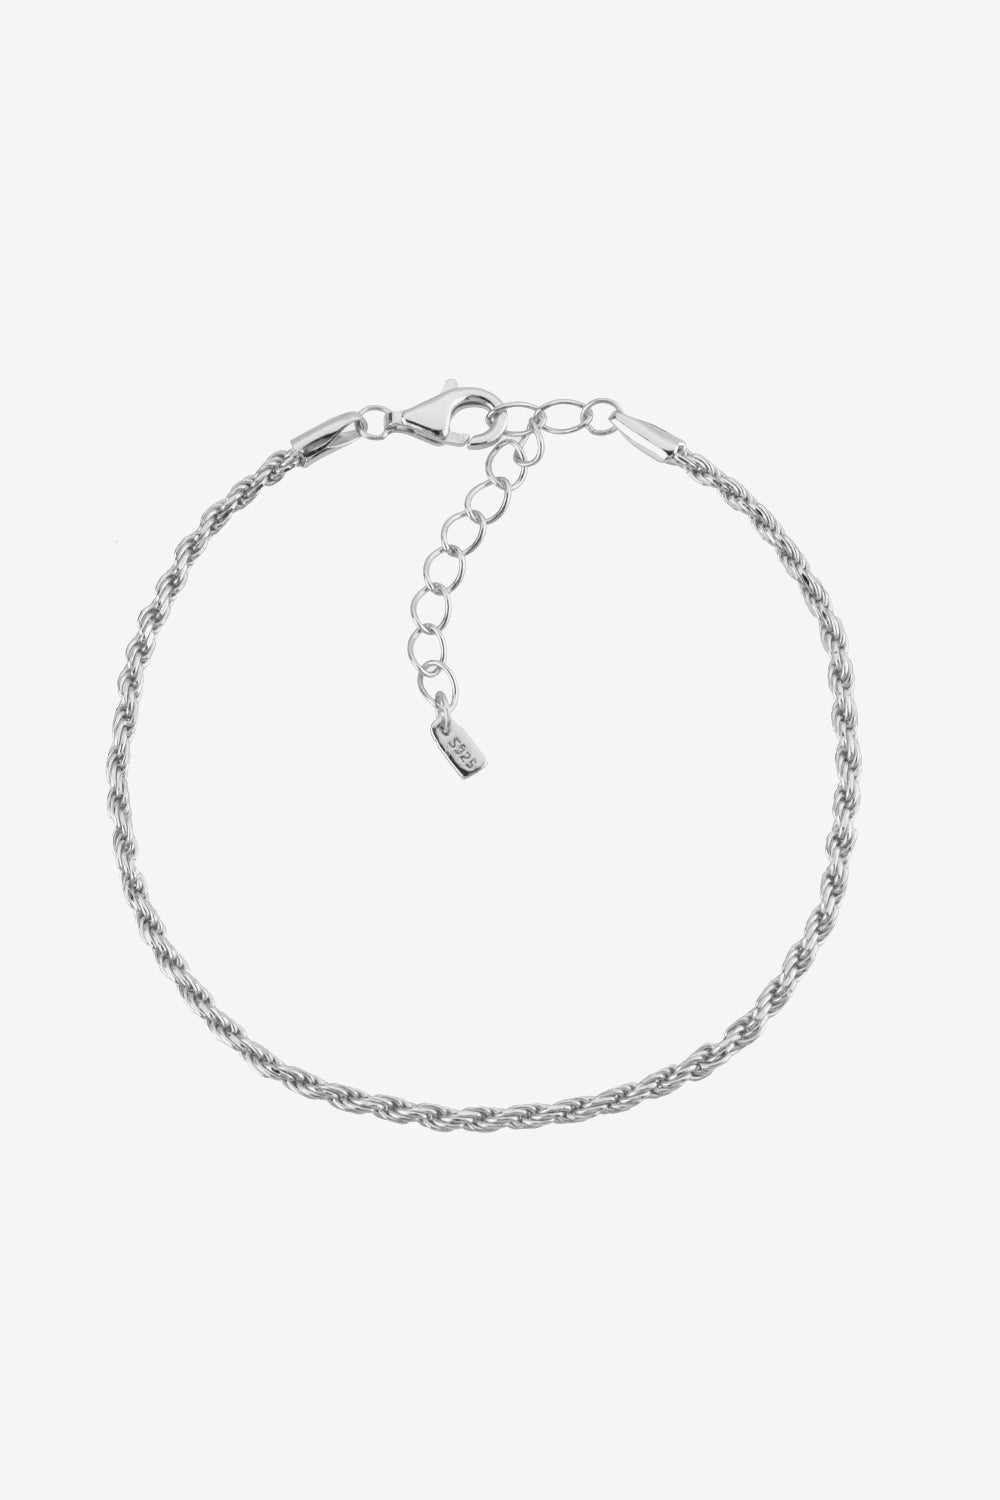 925 Sterling Silver Twisted Bracelet - Silver / One Size - Women’s Jewelry - Bracelets - 1 - 2024